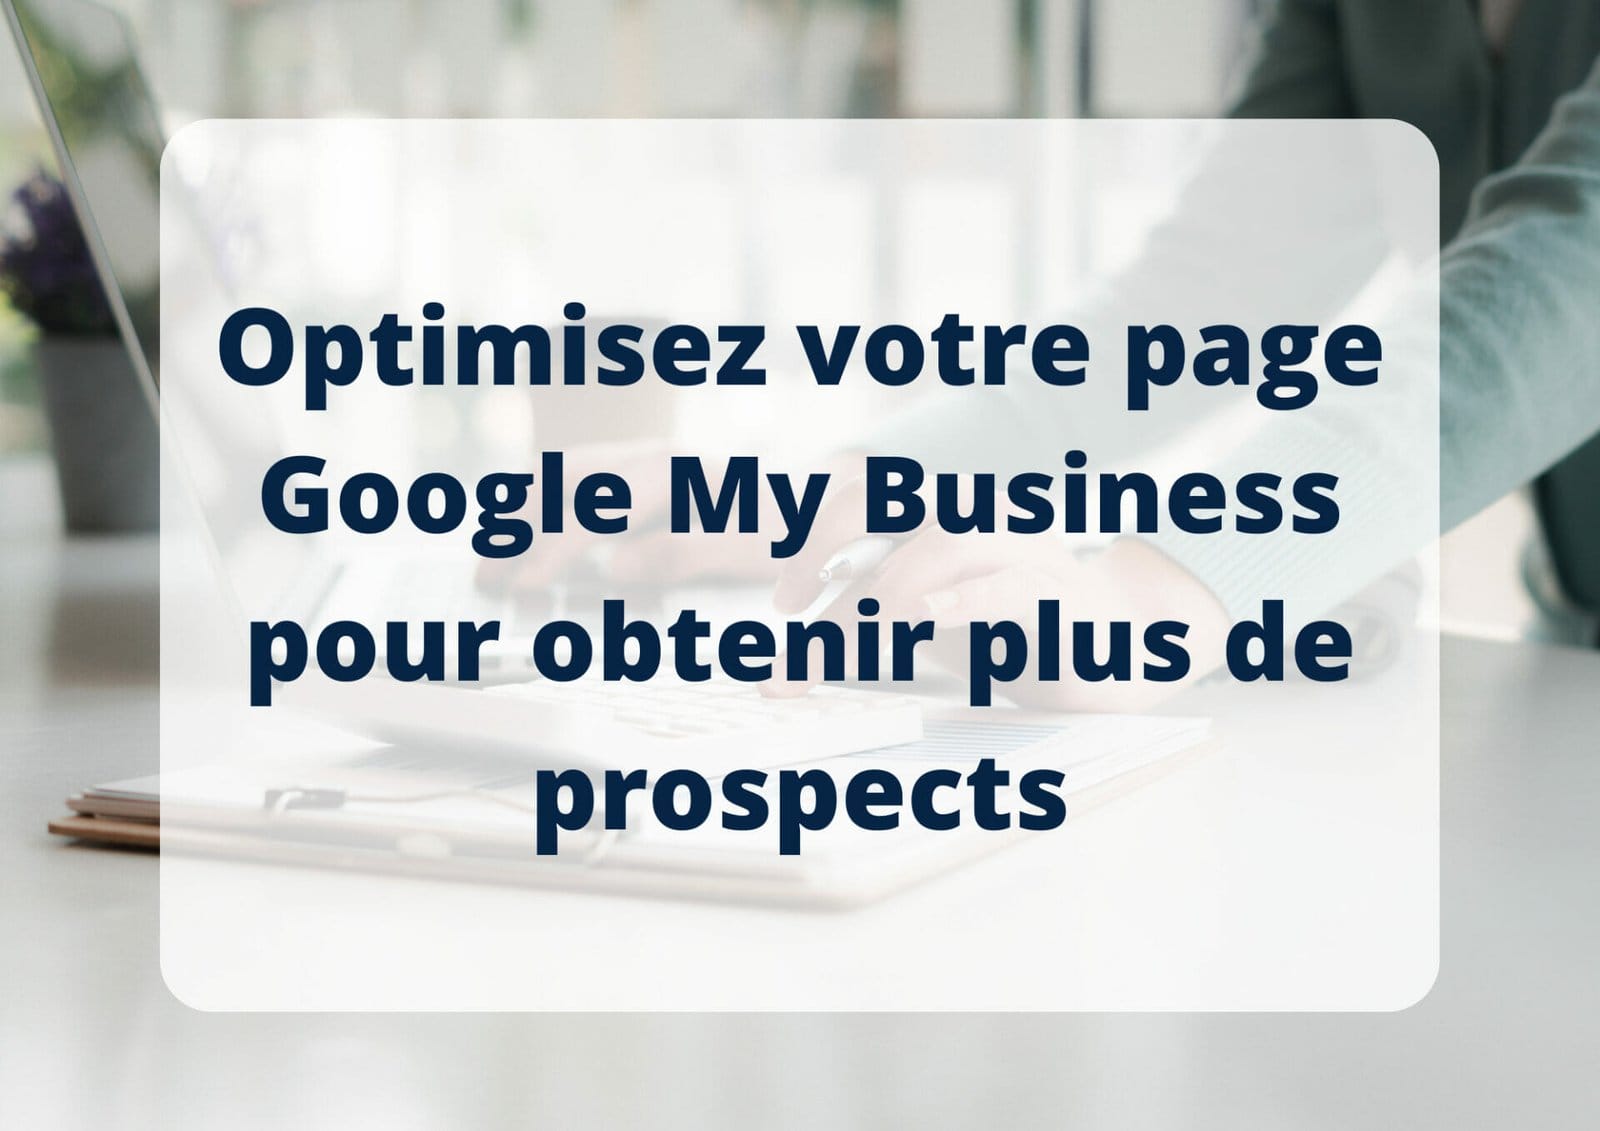 Optimisez votre page Google My Business pour obtenir plus de prospects